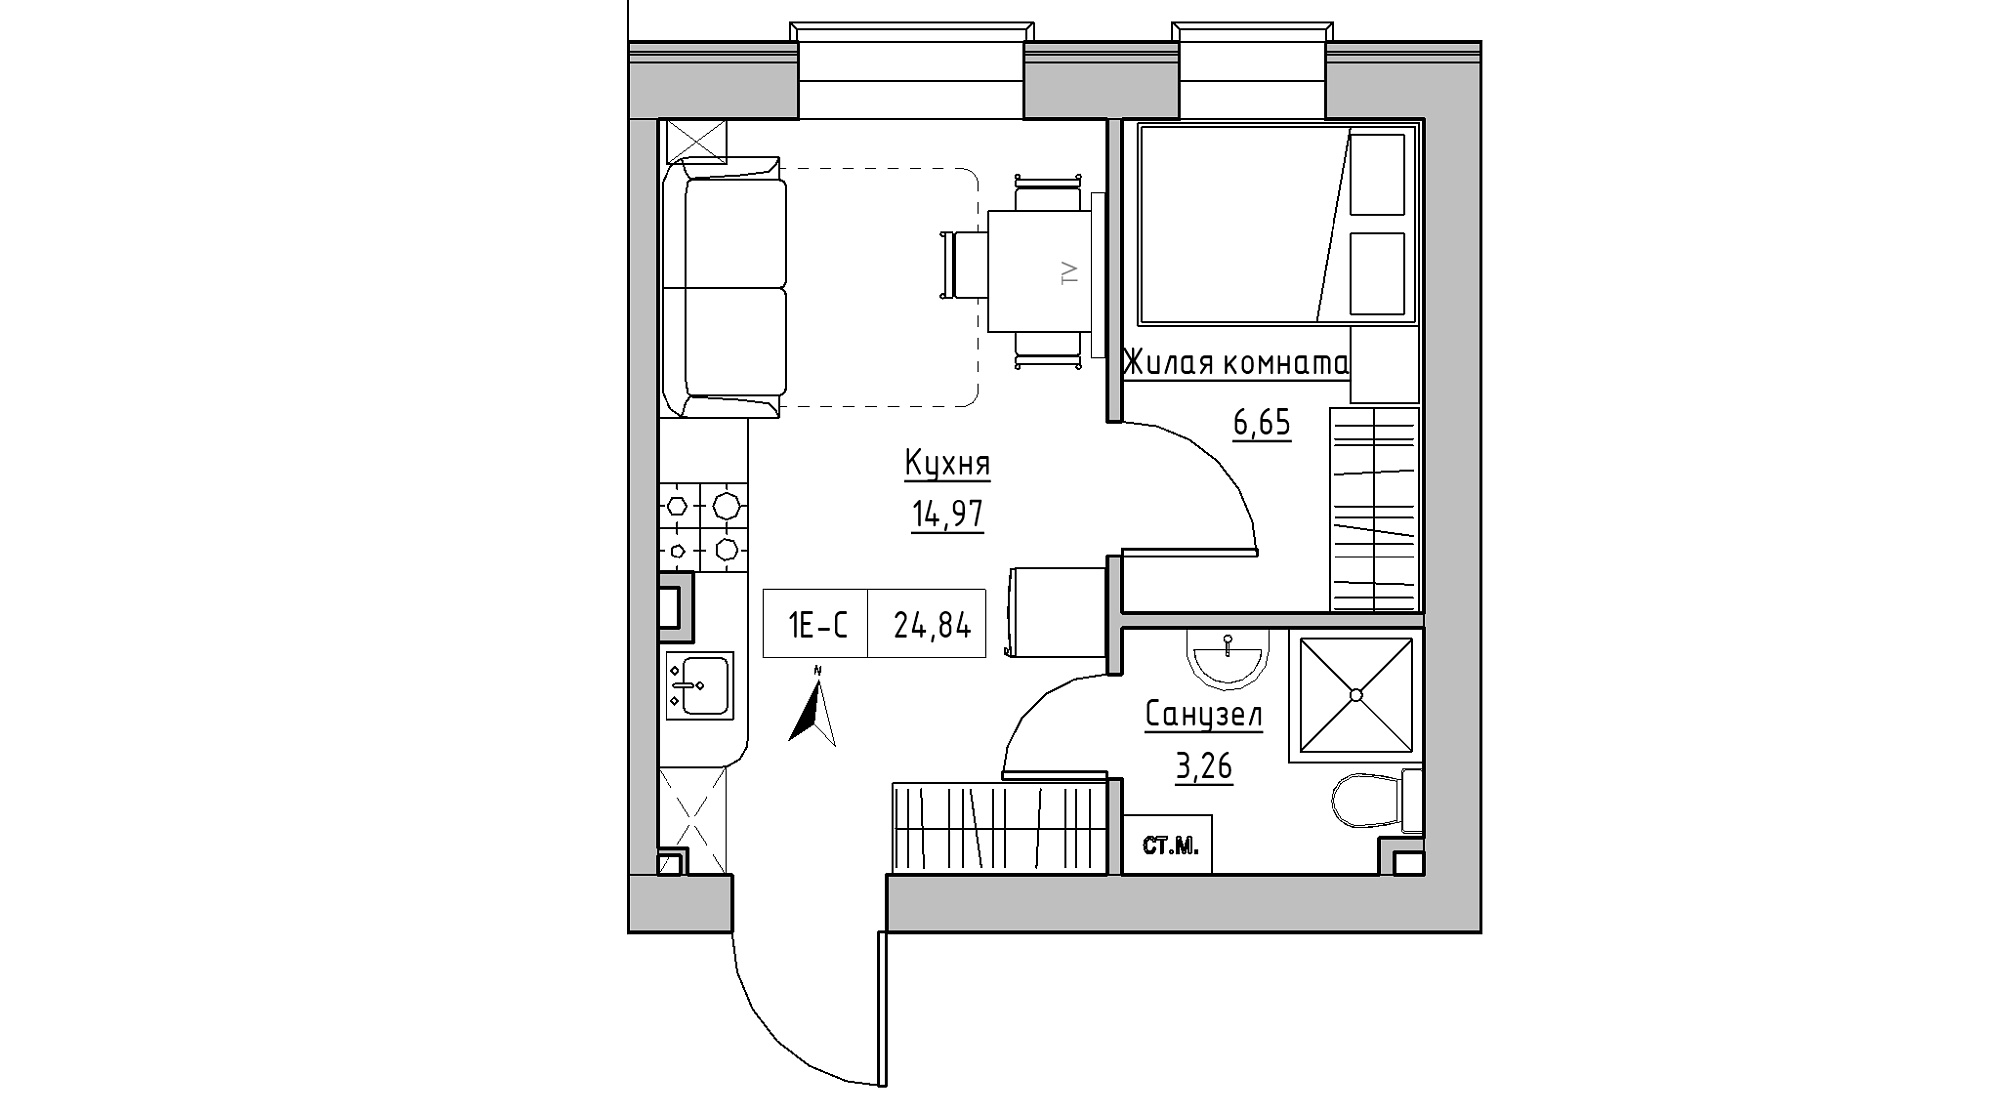 Планування 1-к квартира площею 24.84м2, KS-013-01/0010.